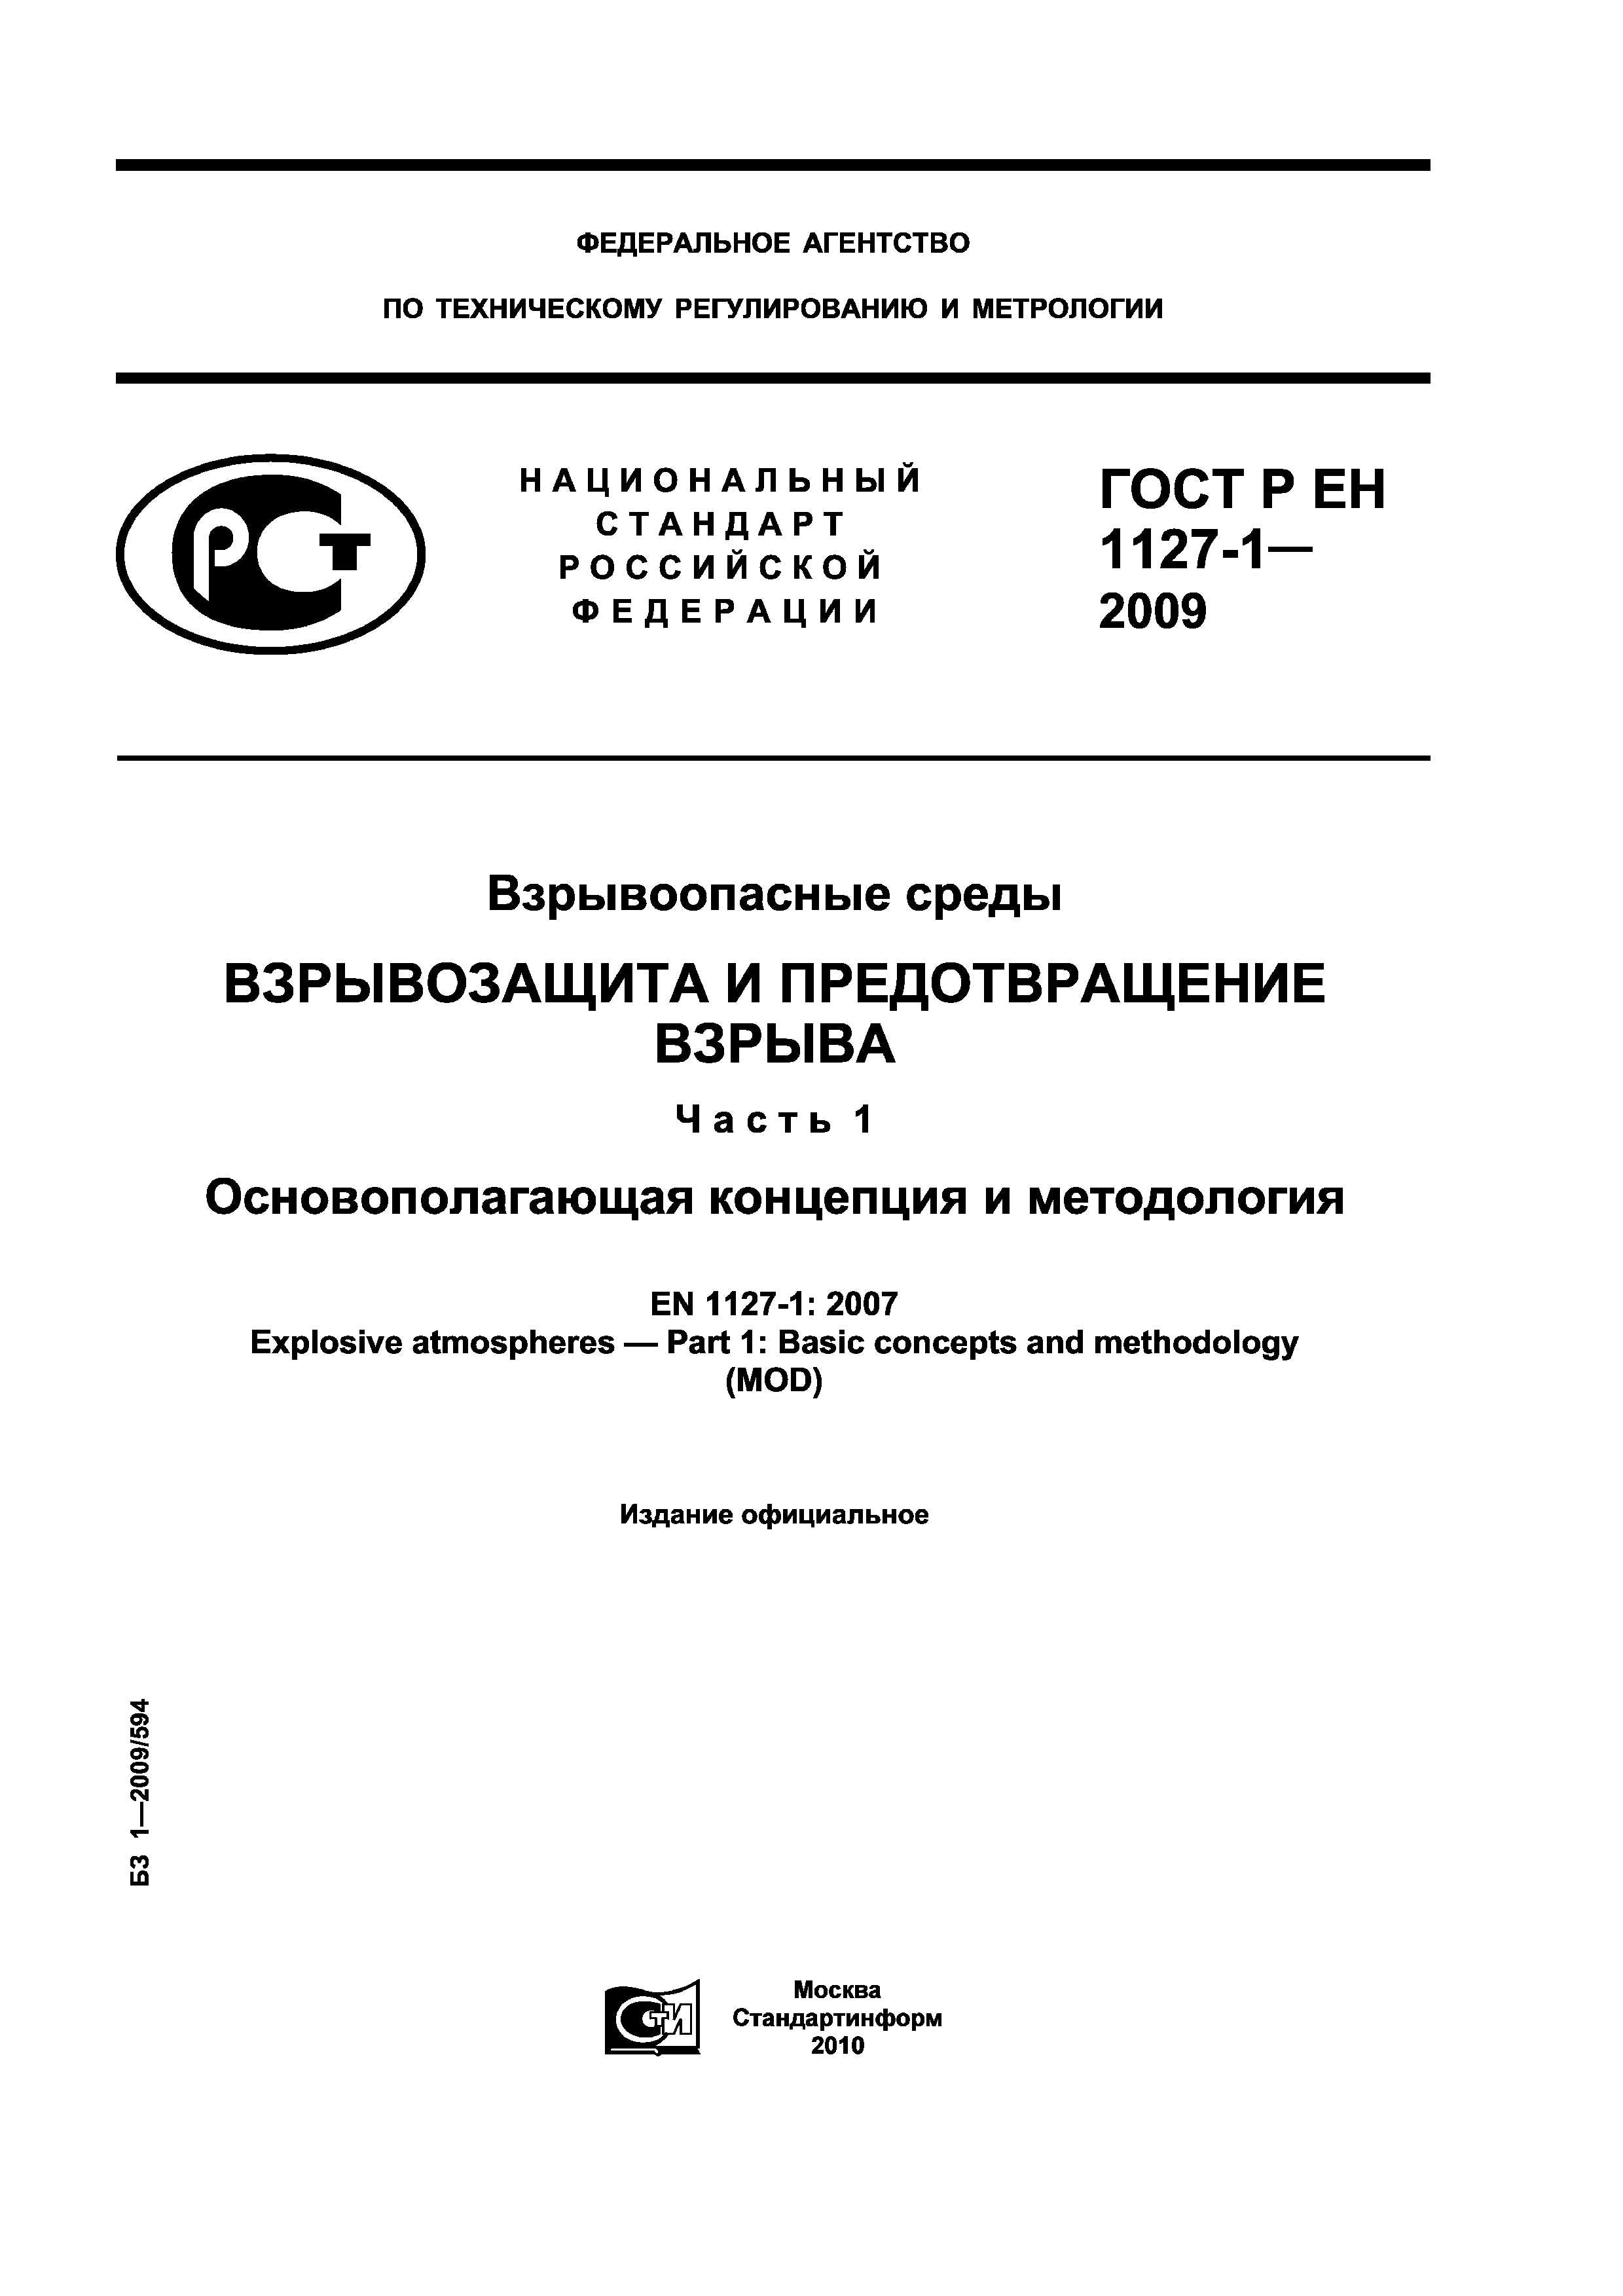 ГОСТ Р ЕН 1127-1-2009